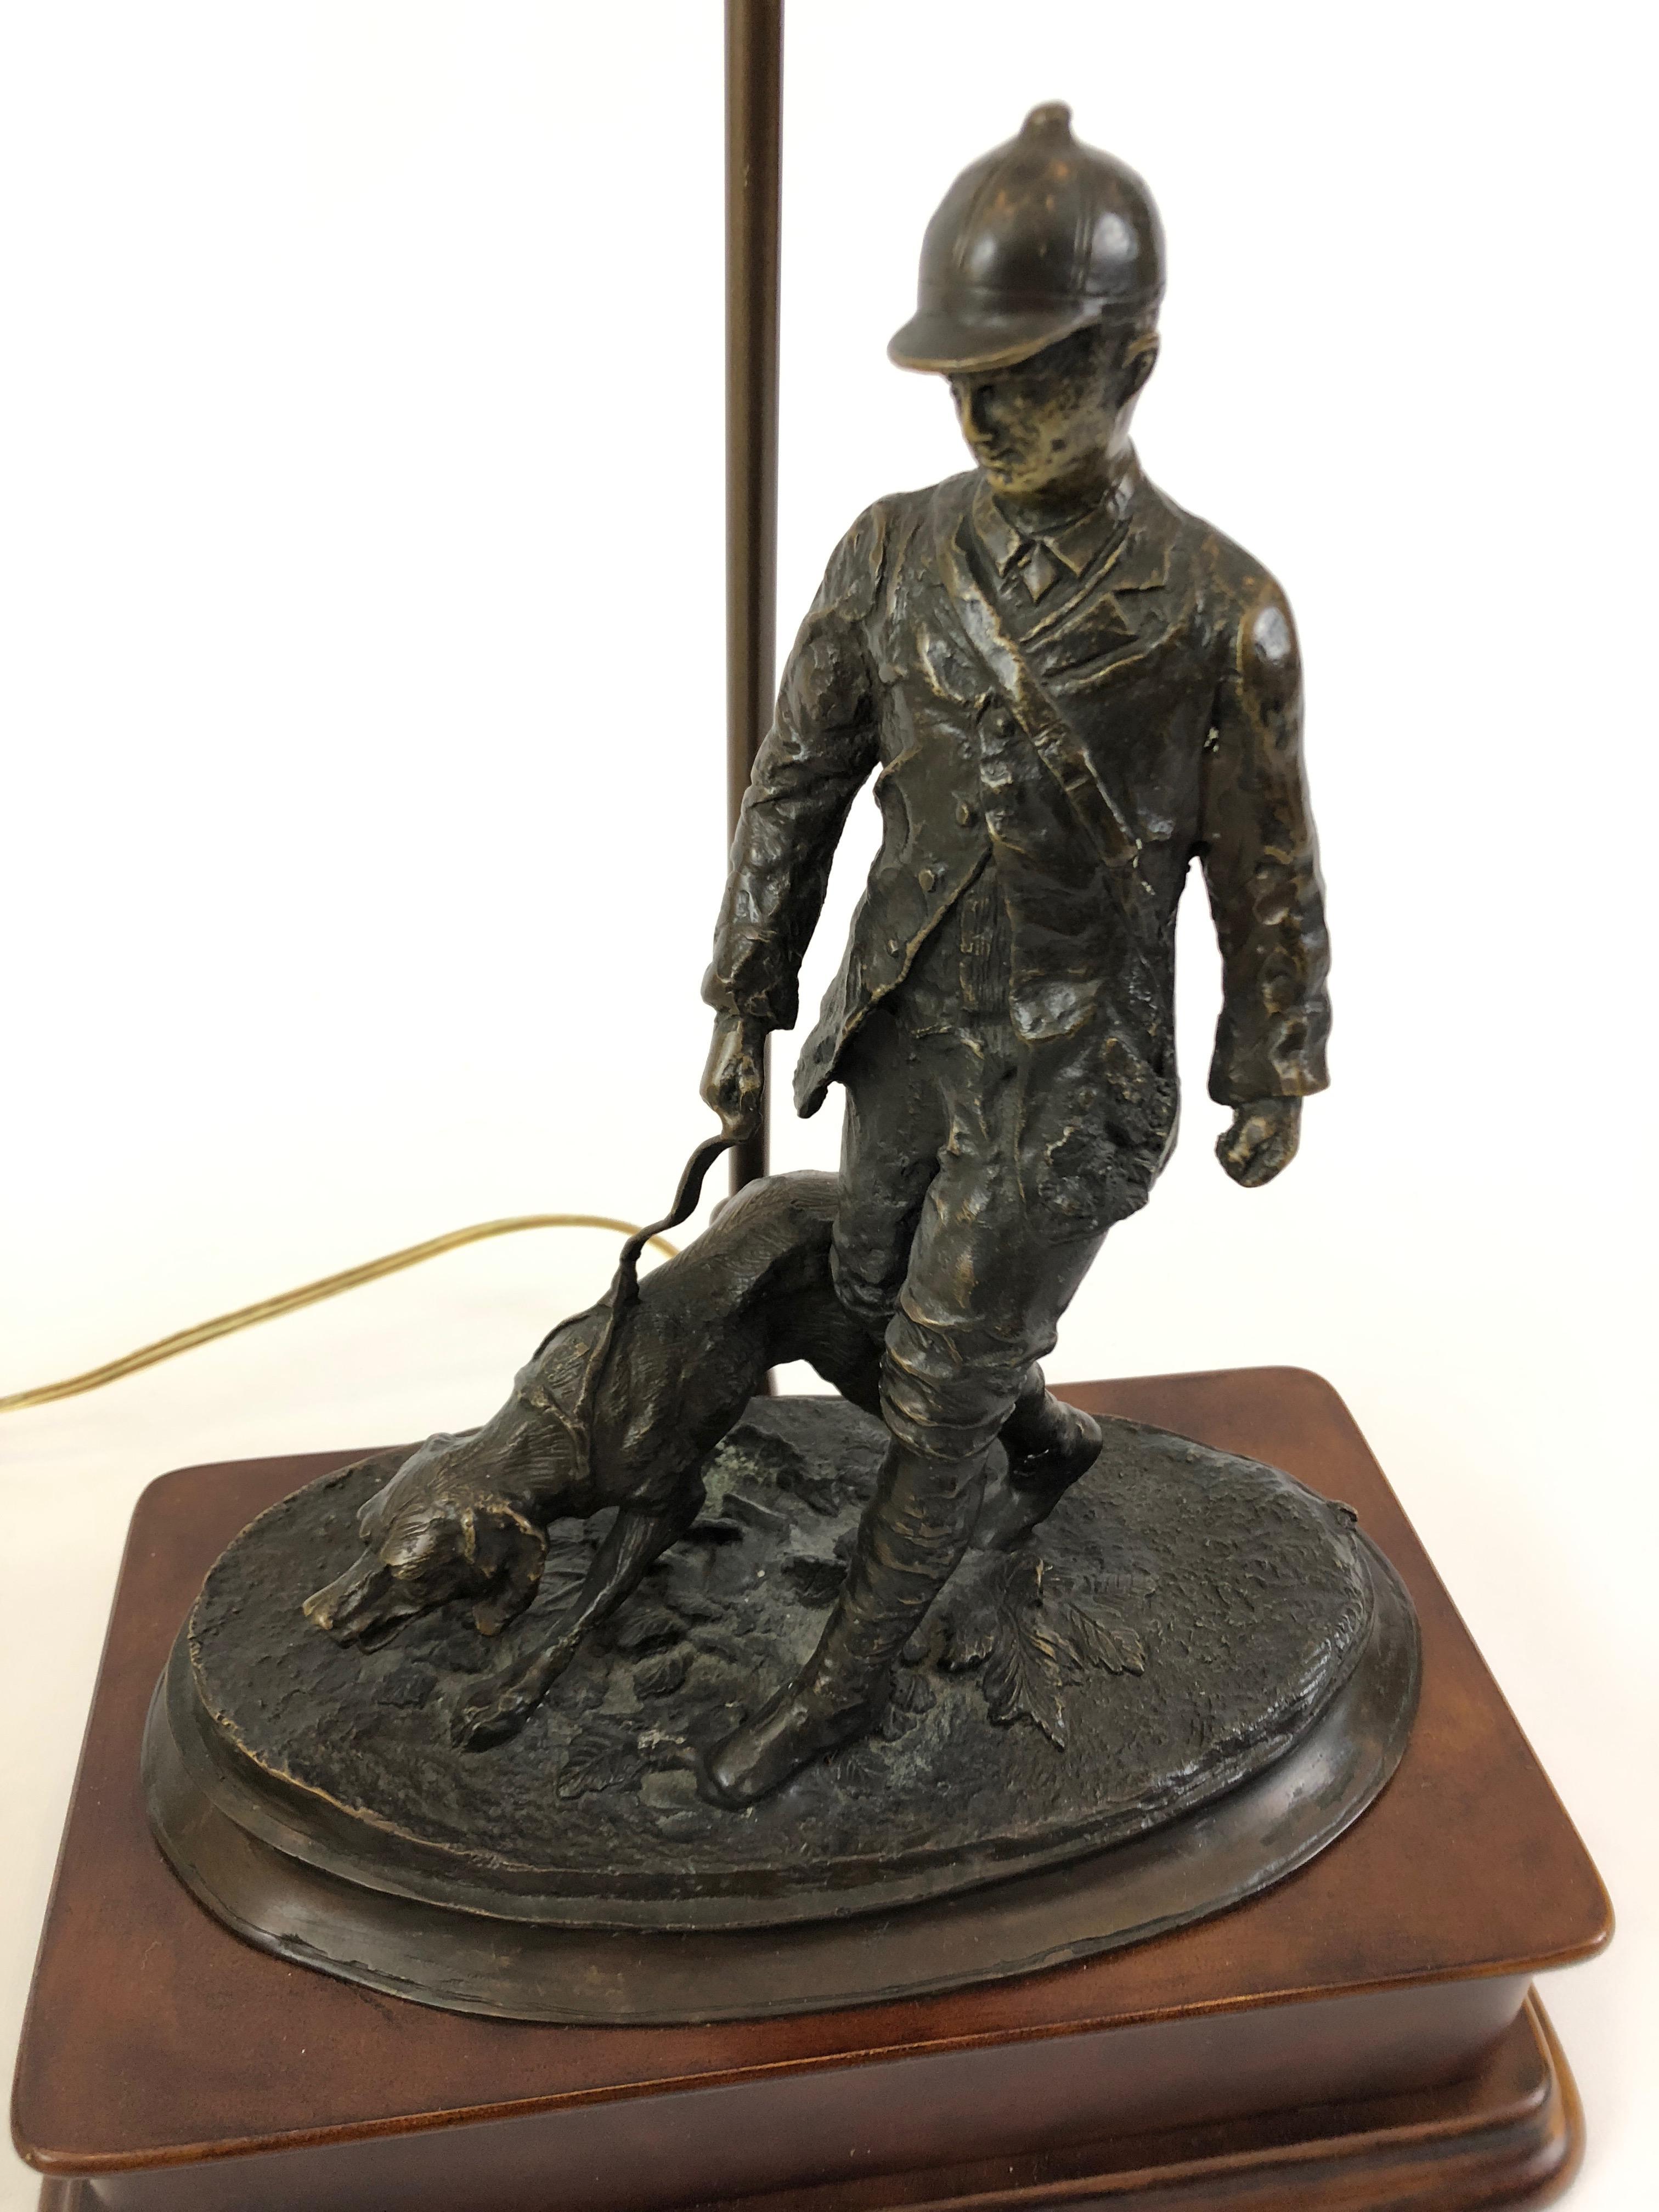 Kunstvolle Tischlampe mit Bronzeskulptur eines Jägers und seines Hundes auf Holzsockel mit schönem Seidenschirm und dekorativem Abschluss. 
Die Skulptur ist 15::5 H
Die Basis ist 12::25 x 6::75.